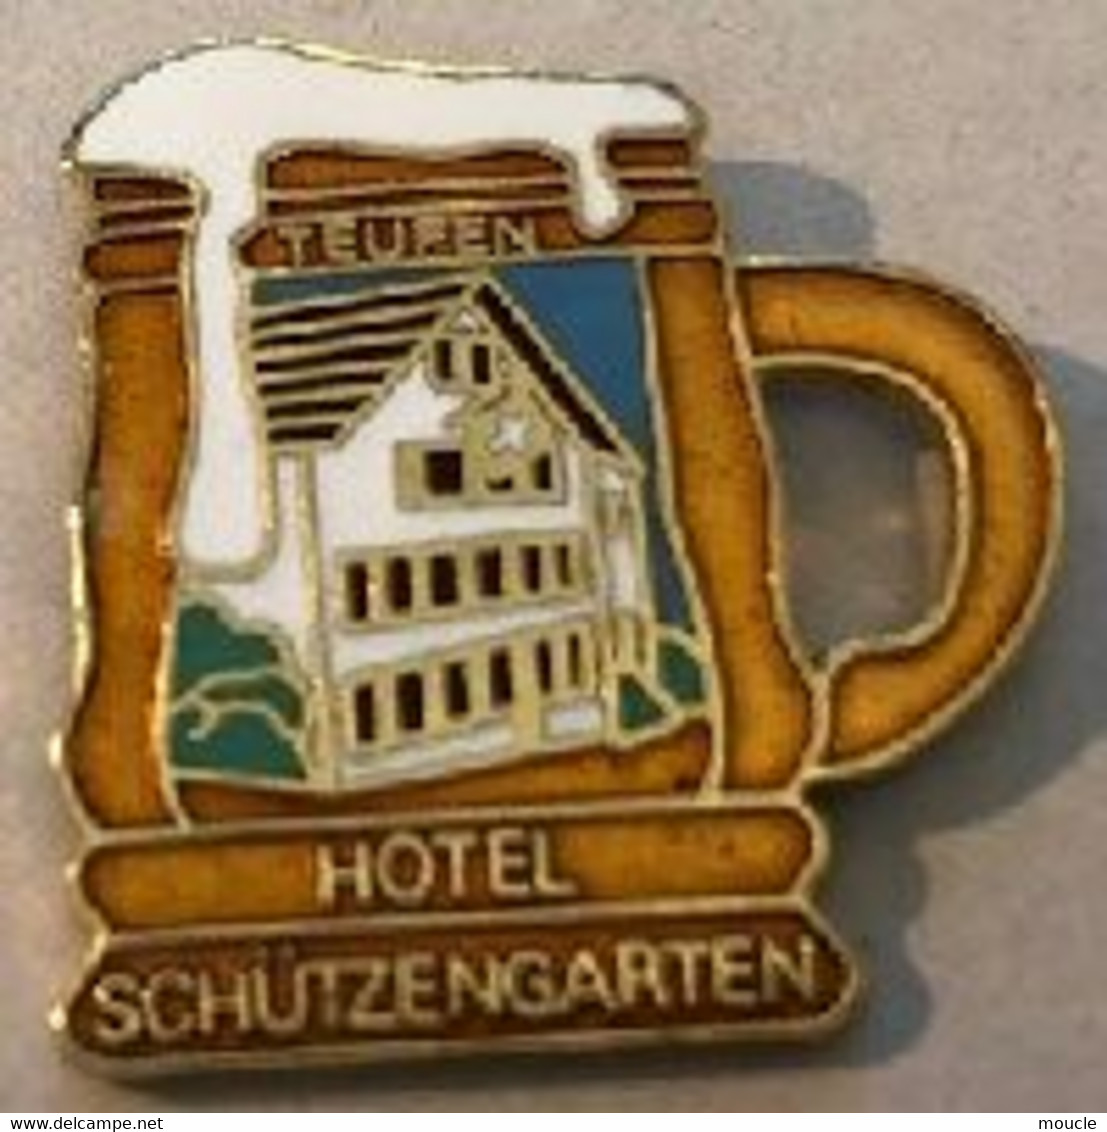 HÔTEL SCHÜTZENGARTEN - CHOPPE - BIER  BIERE- SUISSE - SCHWEIZ - SWITZERLAND - SVIZZERA - TEUFEN - EGF - BEER -  (30) - Bierpins